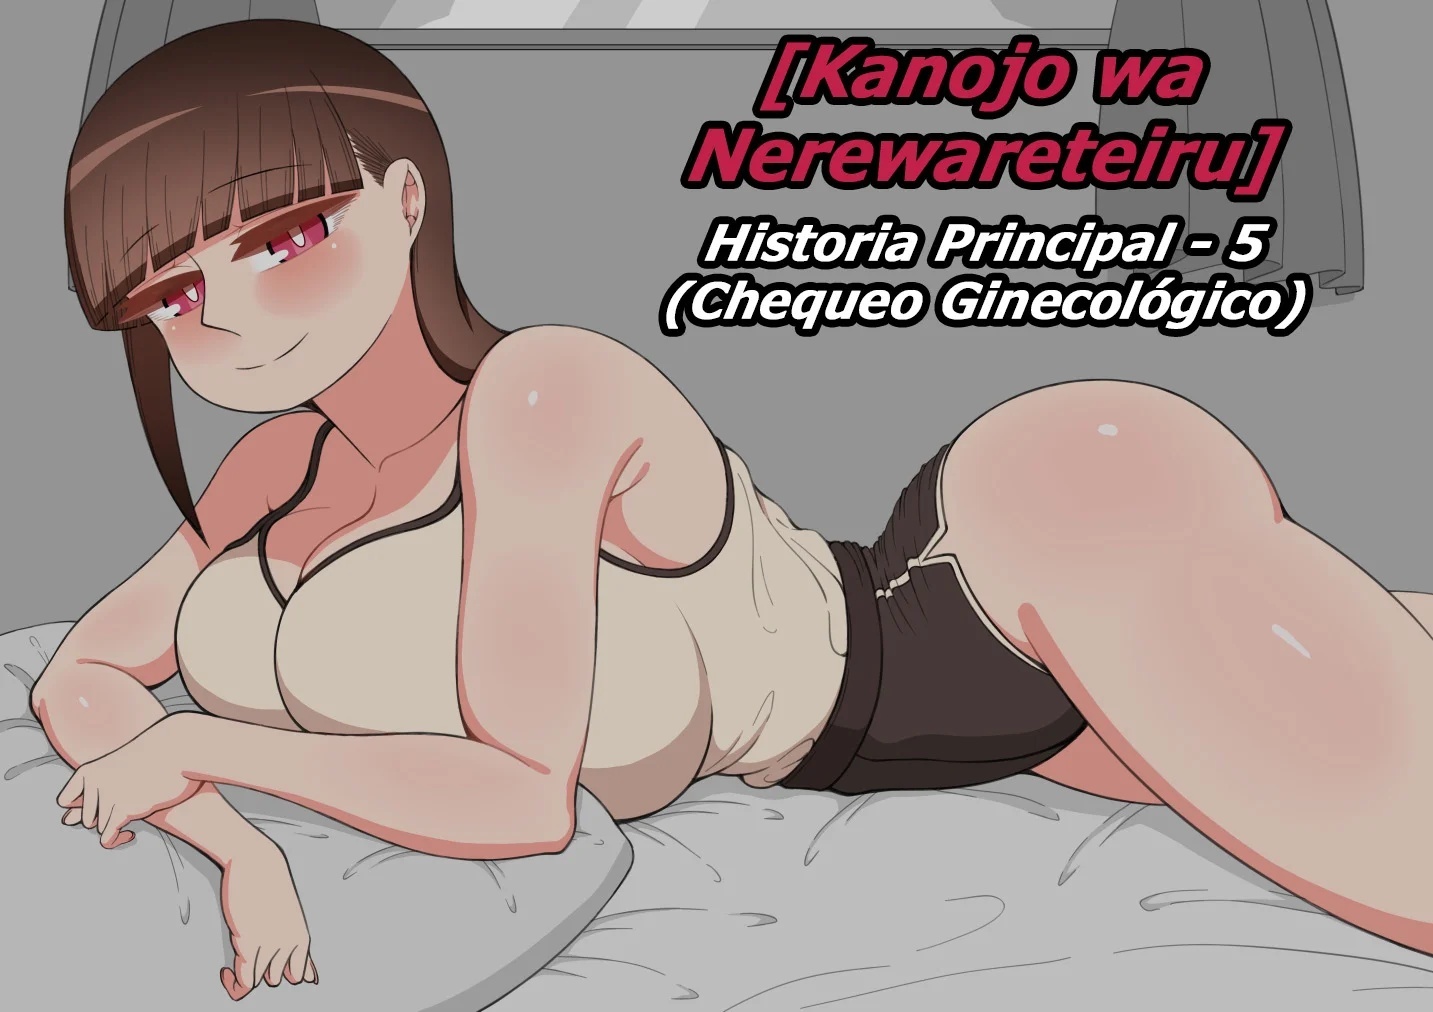 Kanojo wa Nerewareteiru - Historia Principal 5 - Chequeo Ginecologico - 0